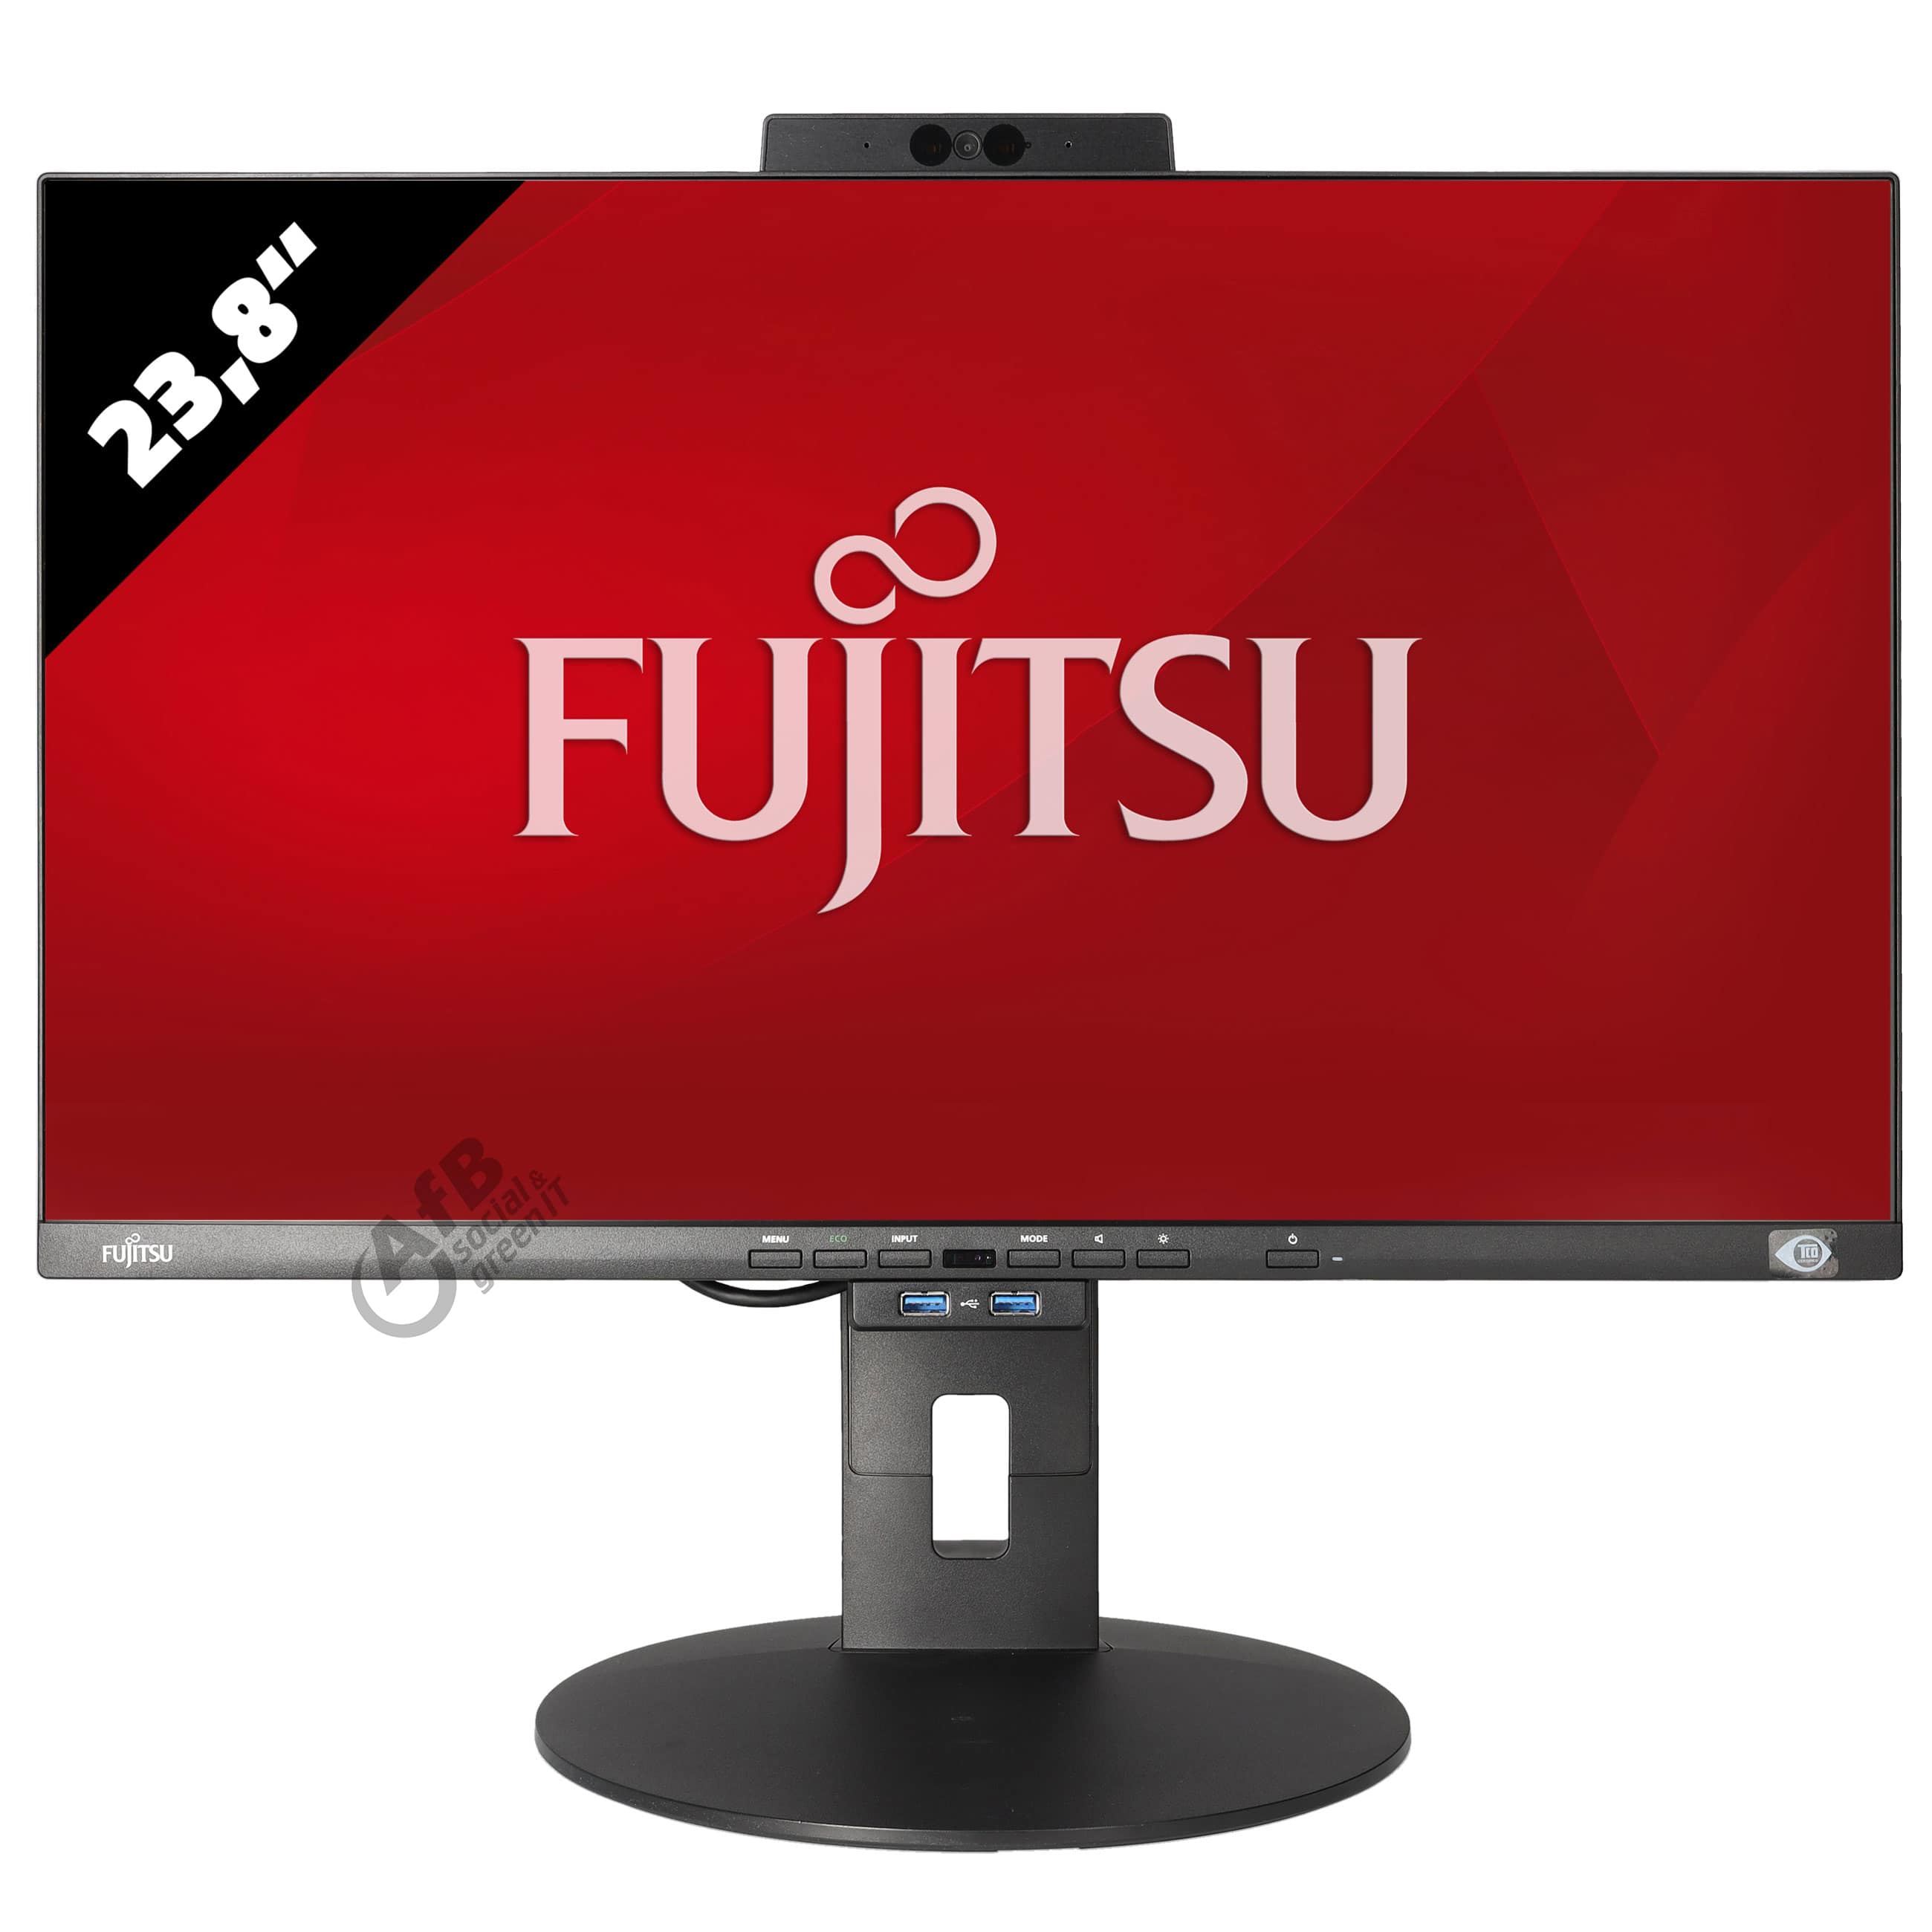 Fujitsu AIO Display P2410 mit integrierter PC Einheit Esprimo G6012Wie neu - AfB-refurbished